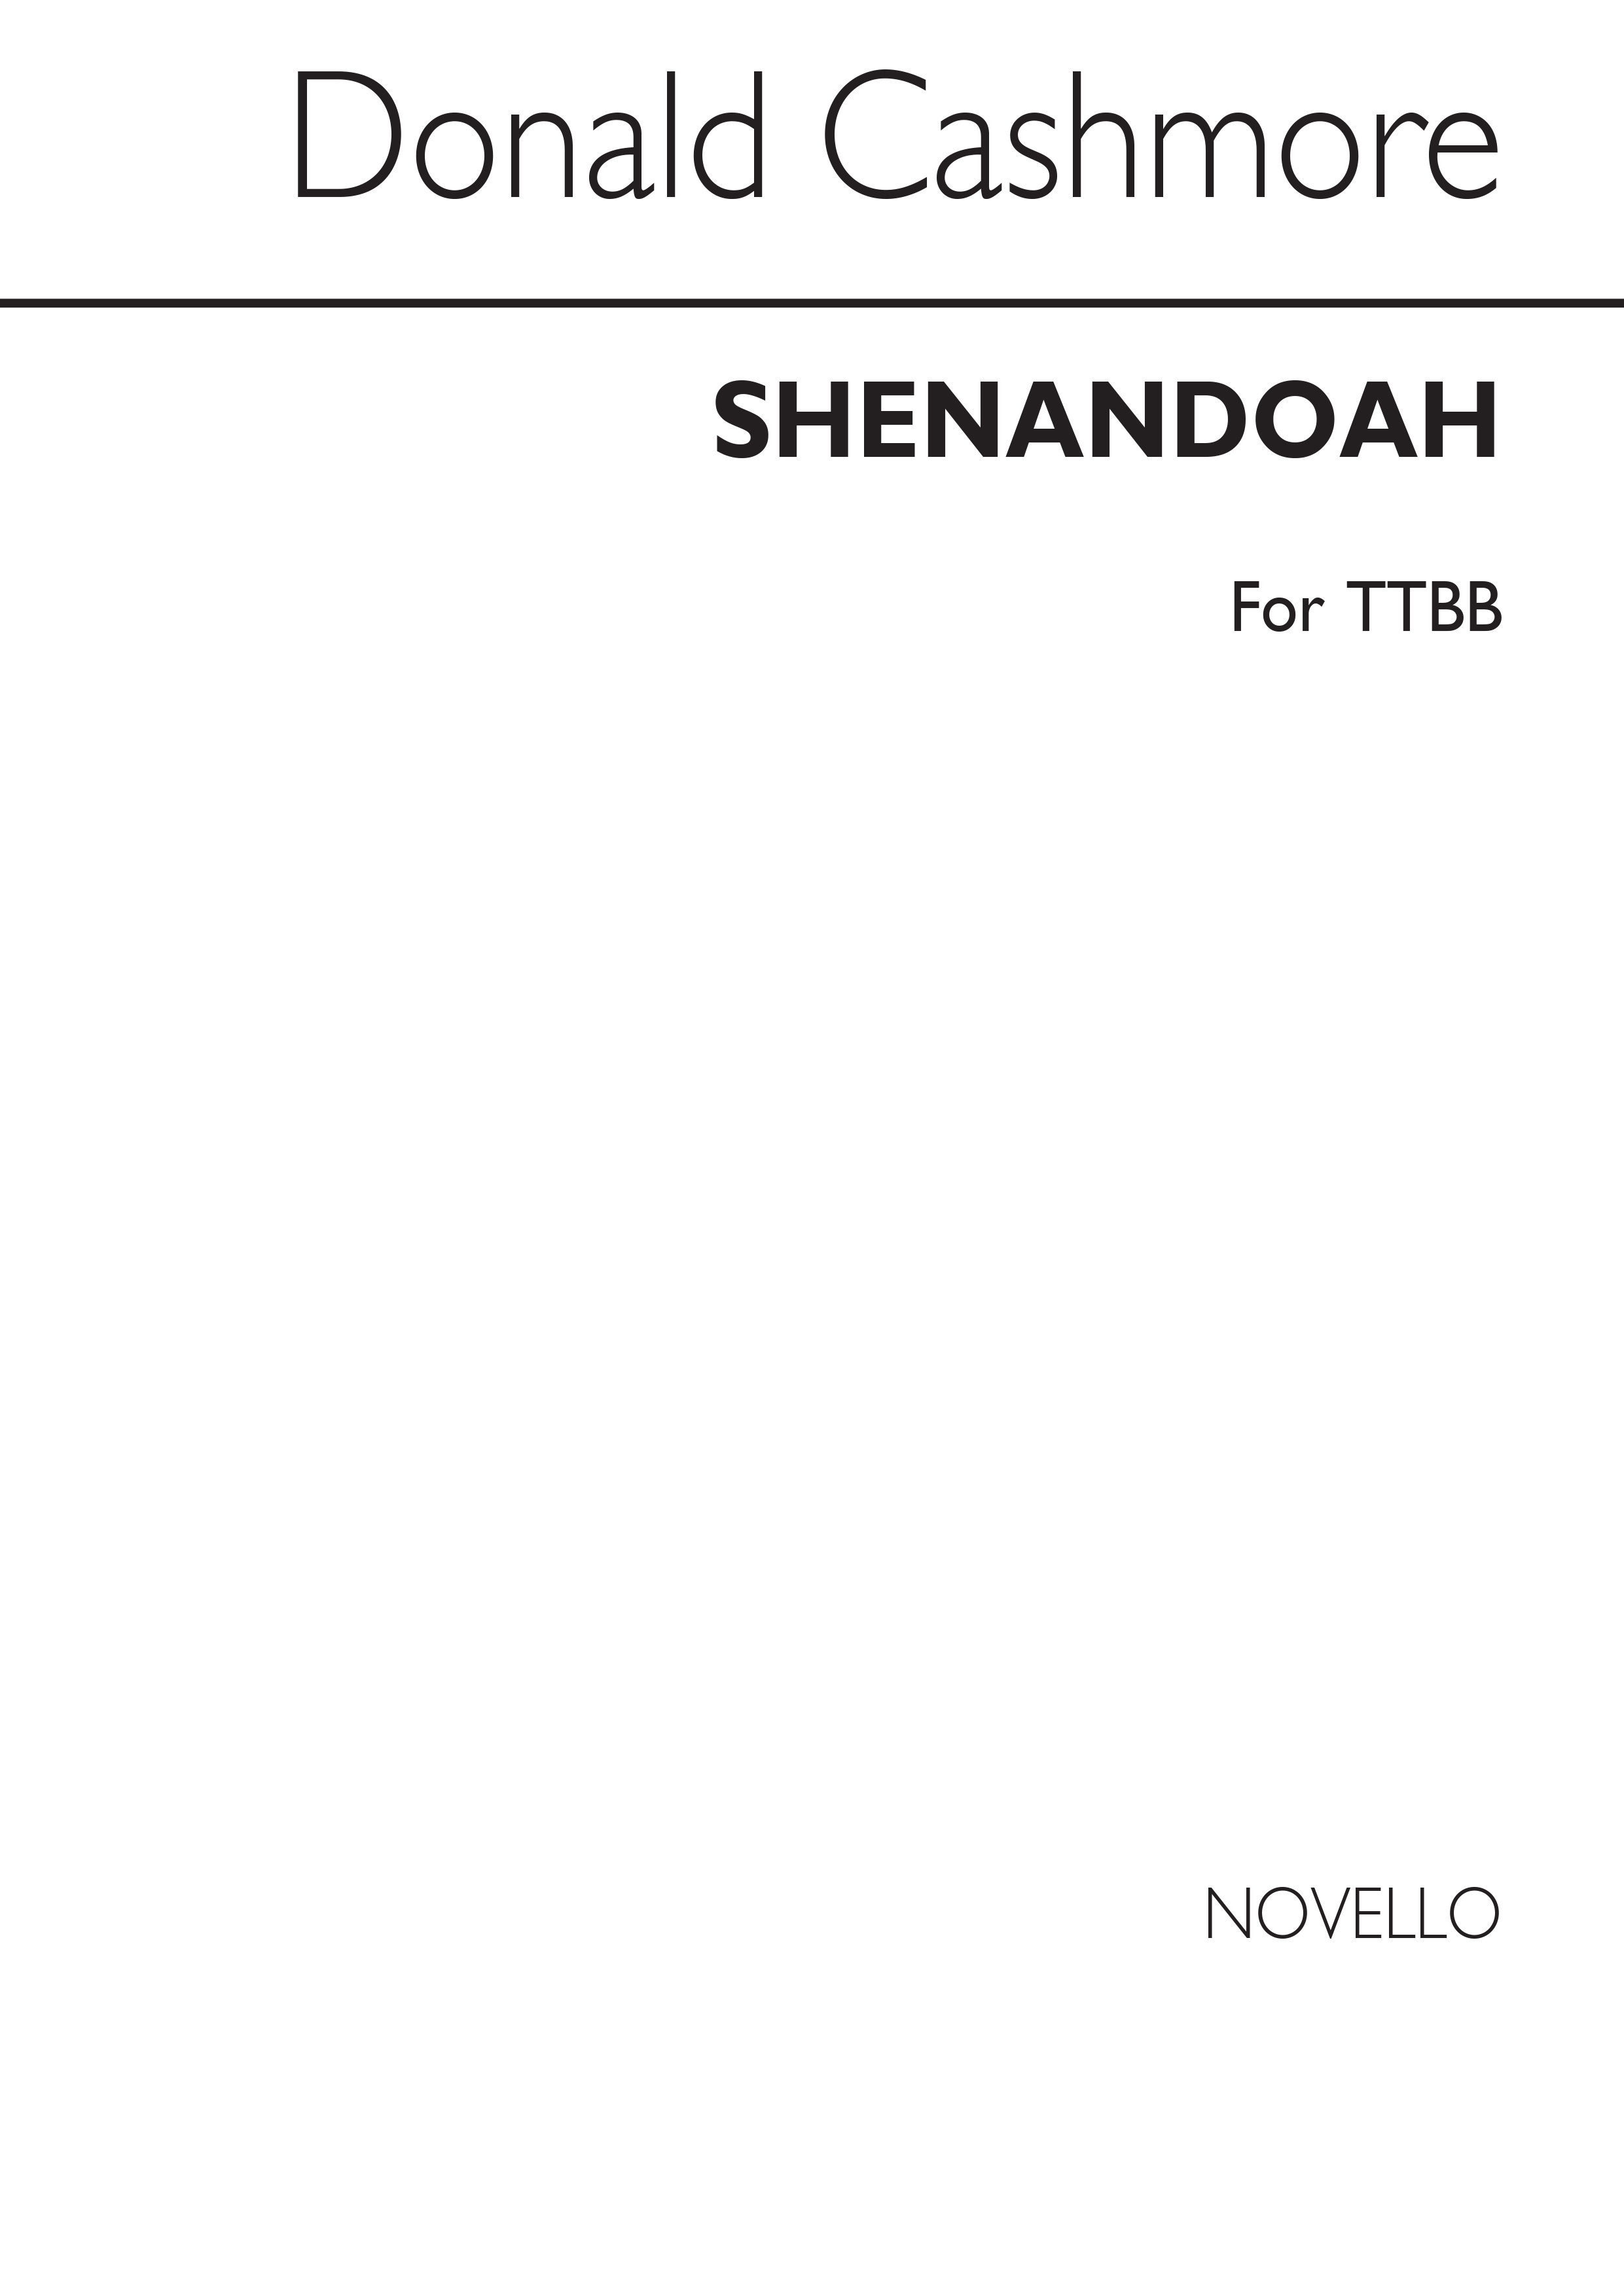 Cashmore: Shenandoah for TTBB Chorus